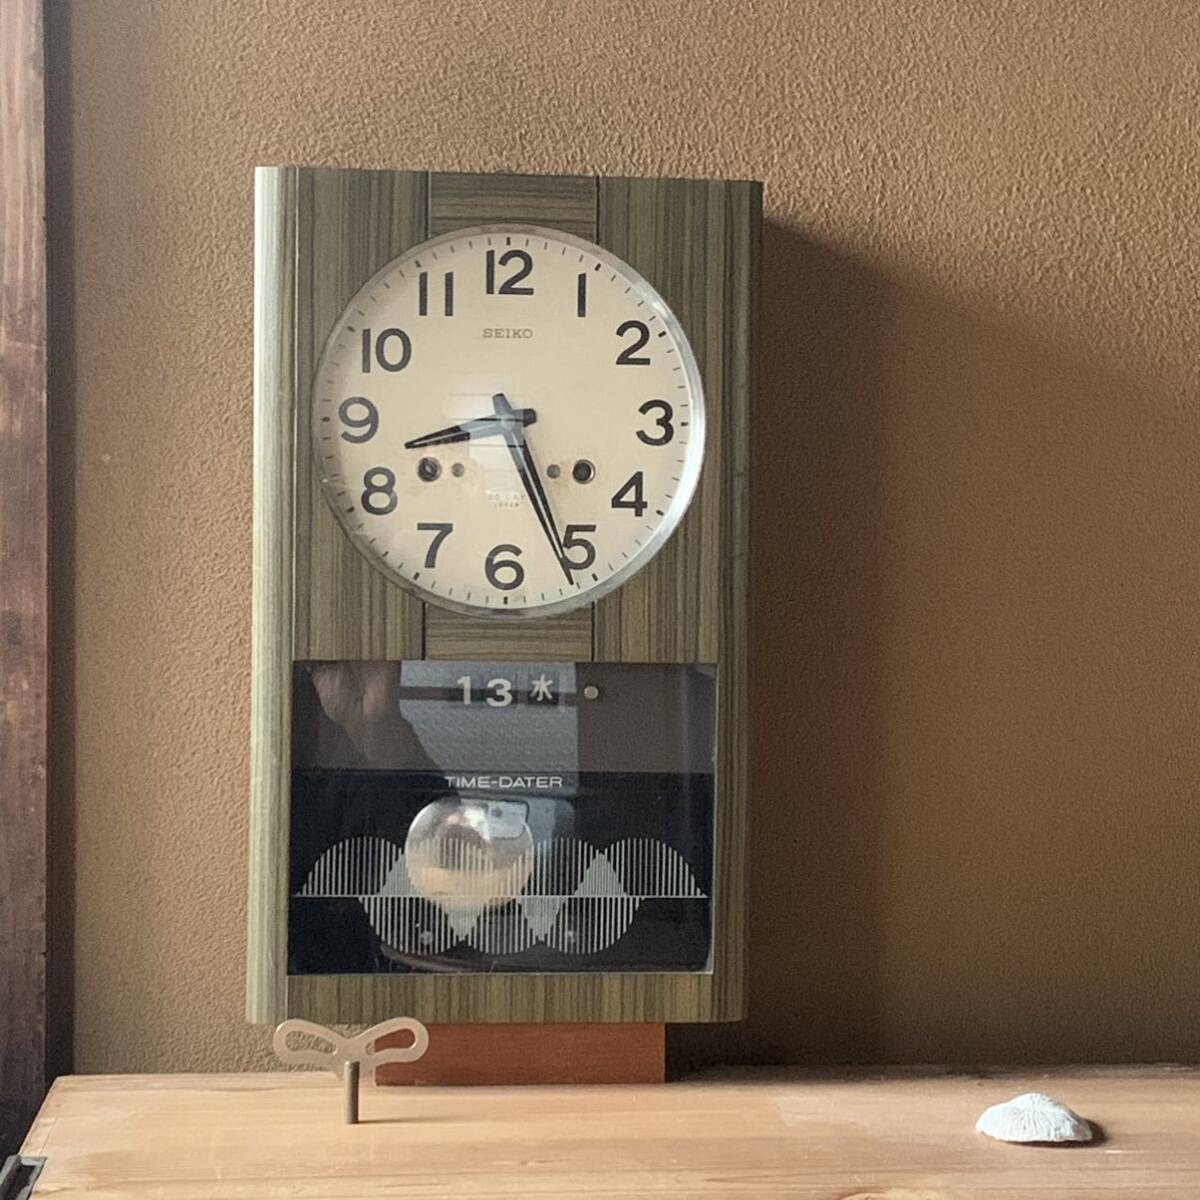 【動作確認済】振り子時計 SEIKO TIME-DATER ゼンマイ式 柱時計 ボンボン時計 昭和レトロ インダストリアルの画像1